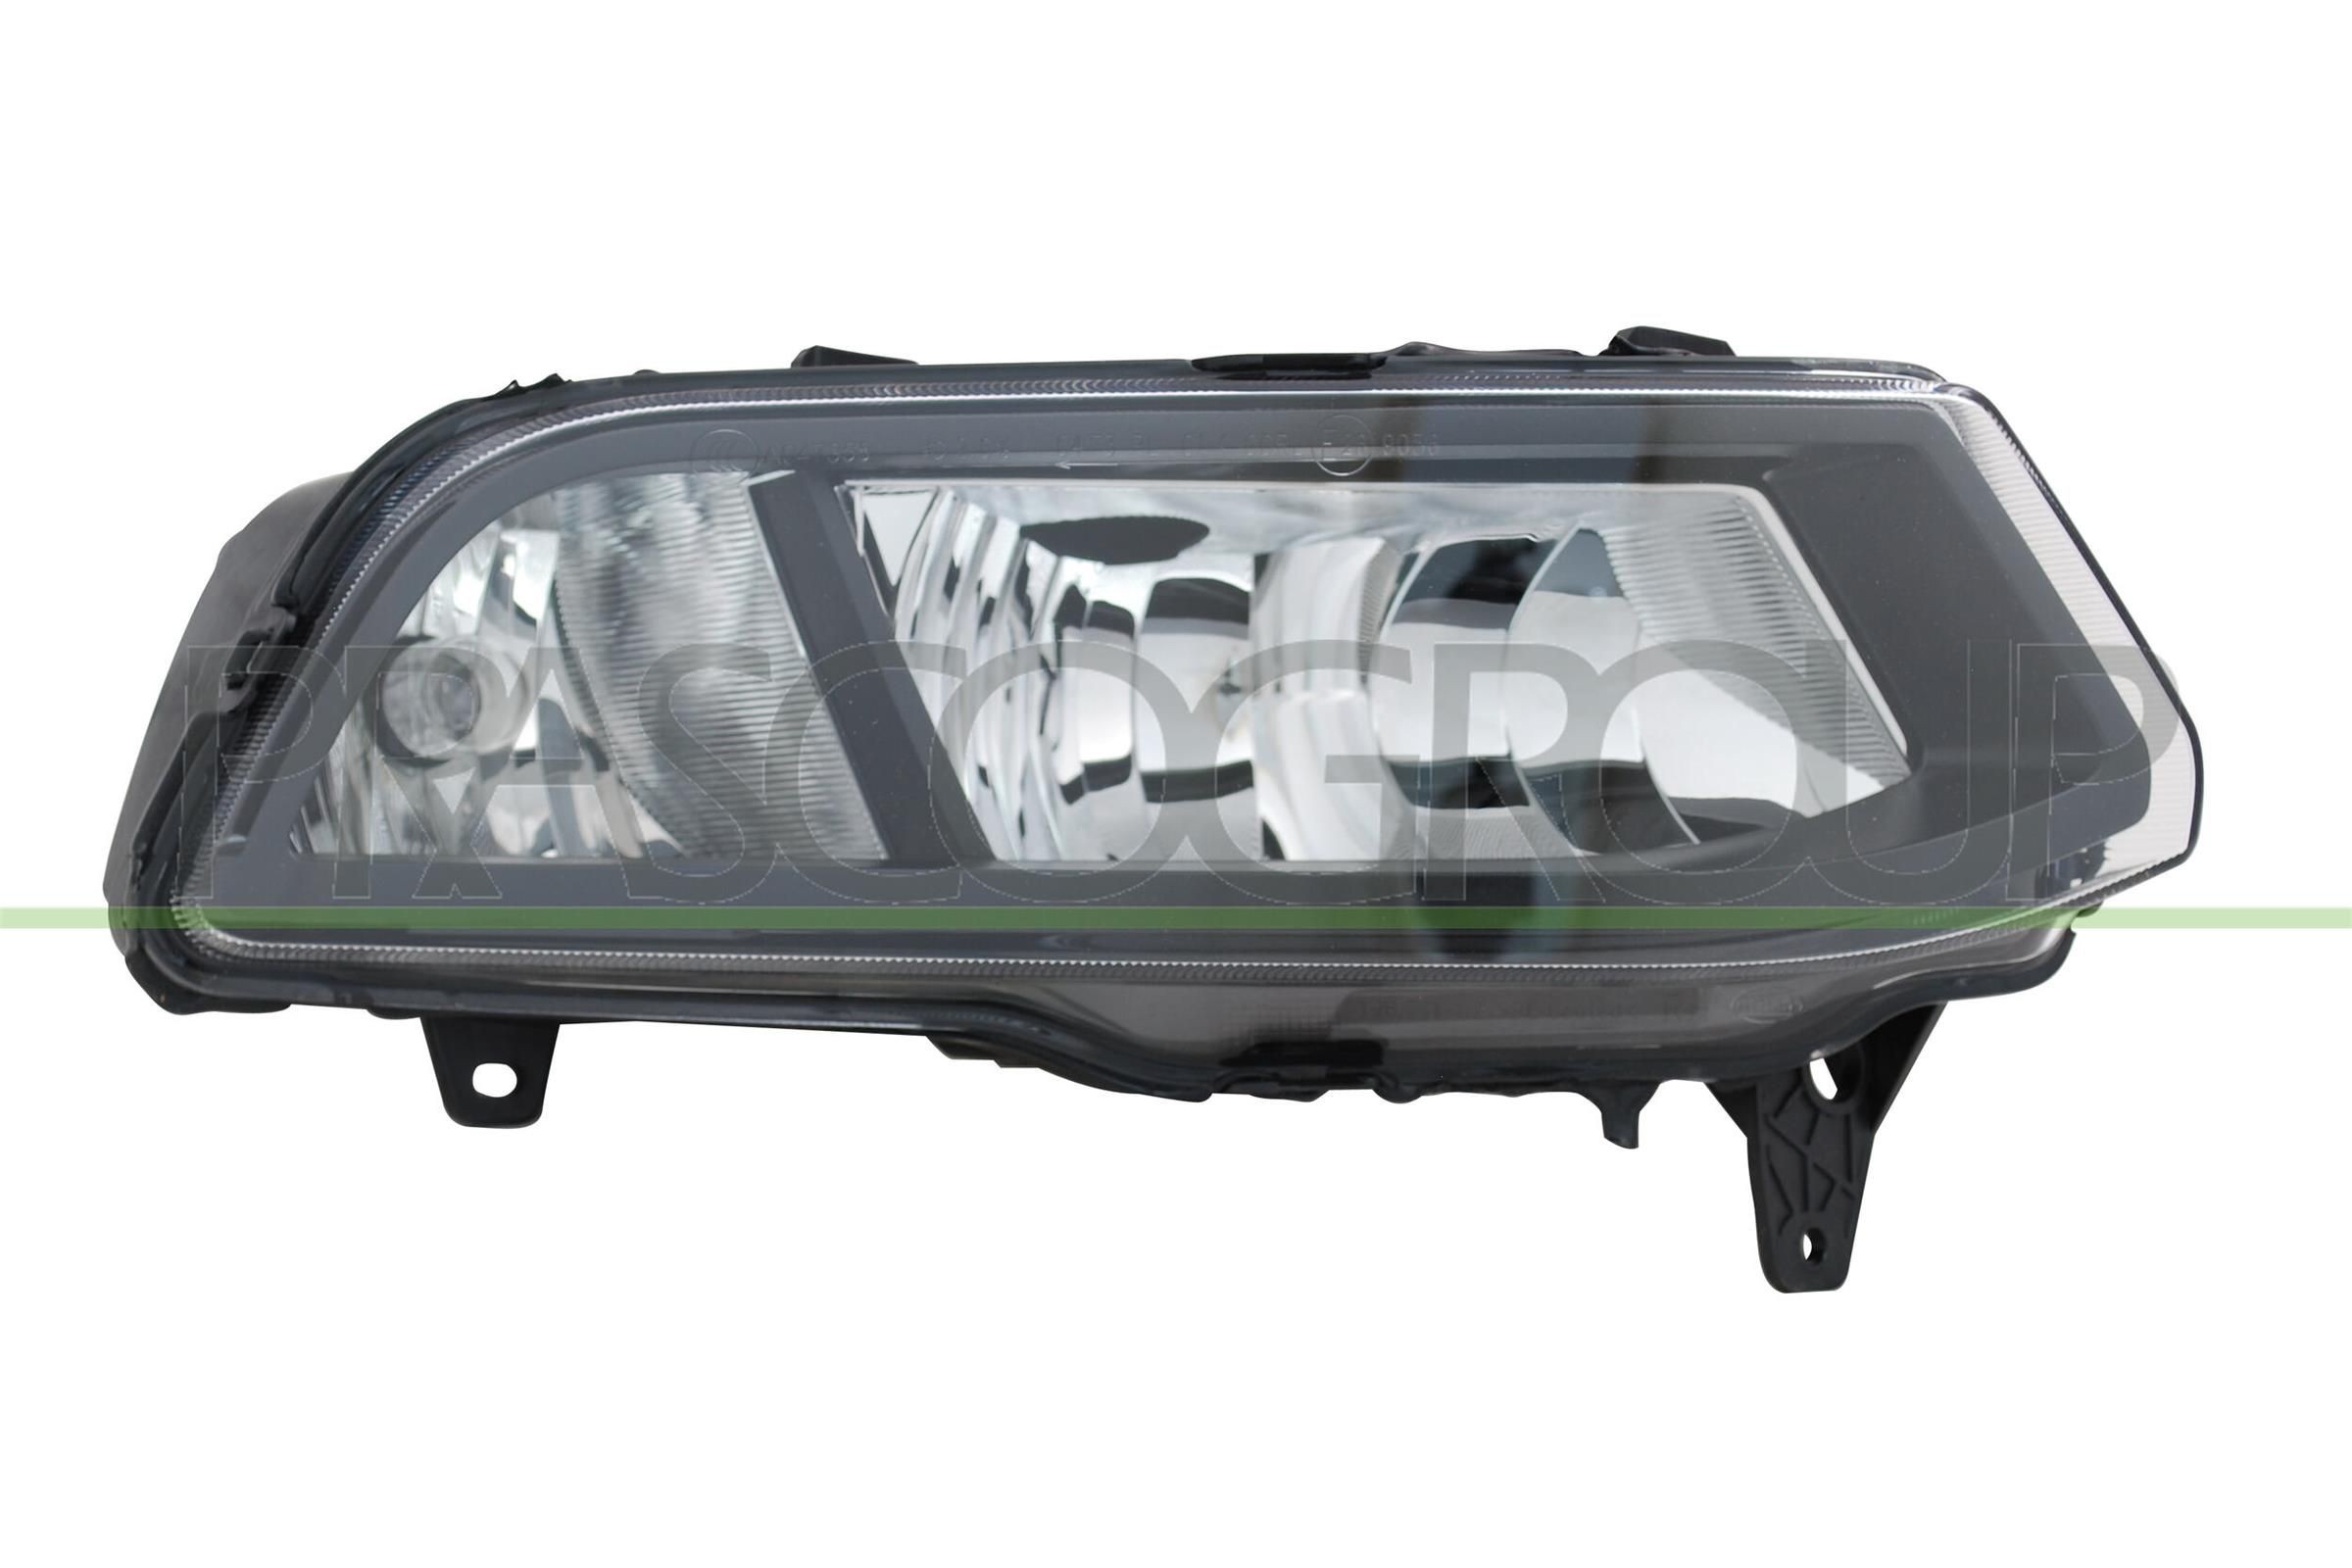 Kennzeichenleuchte für VW CADDY LED und Halogen günstig im Online-Shop